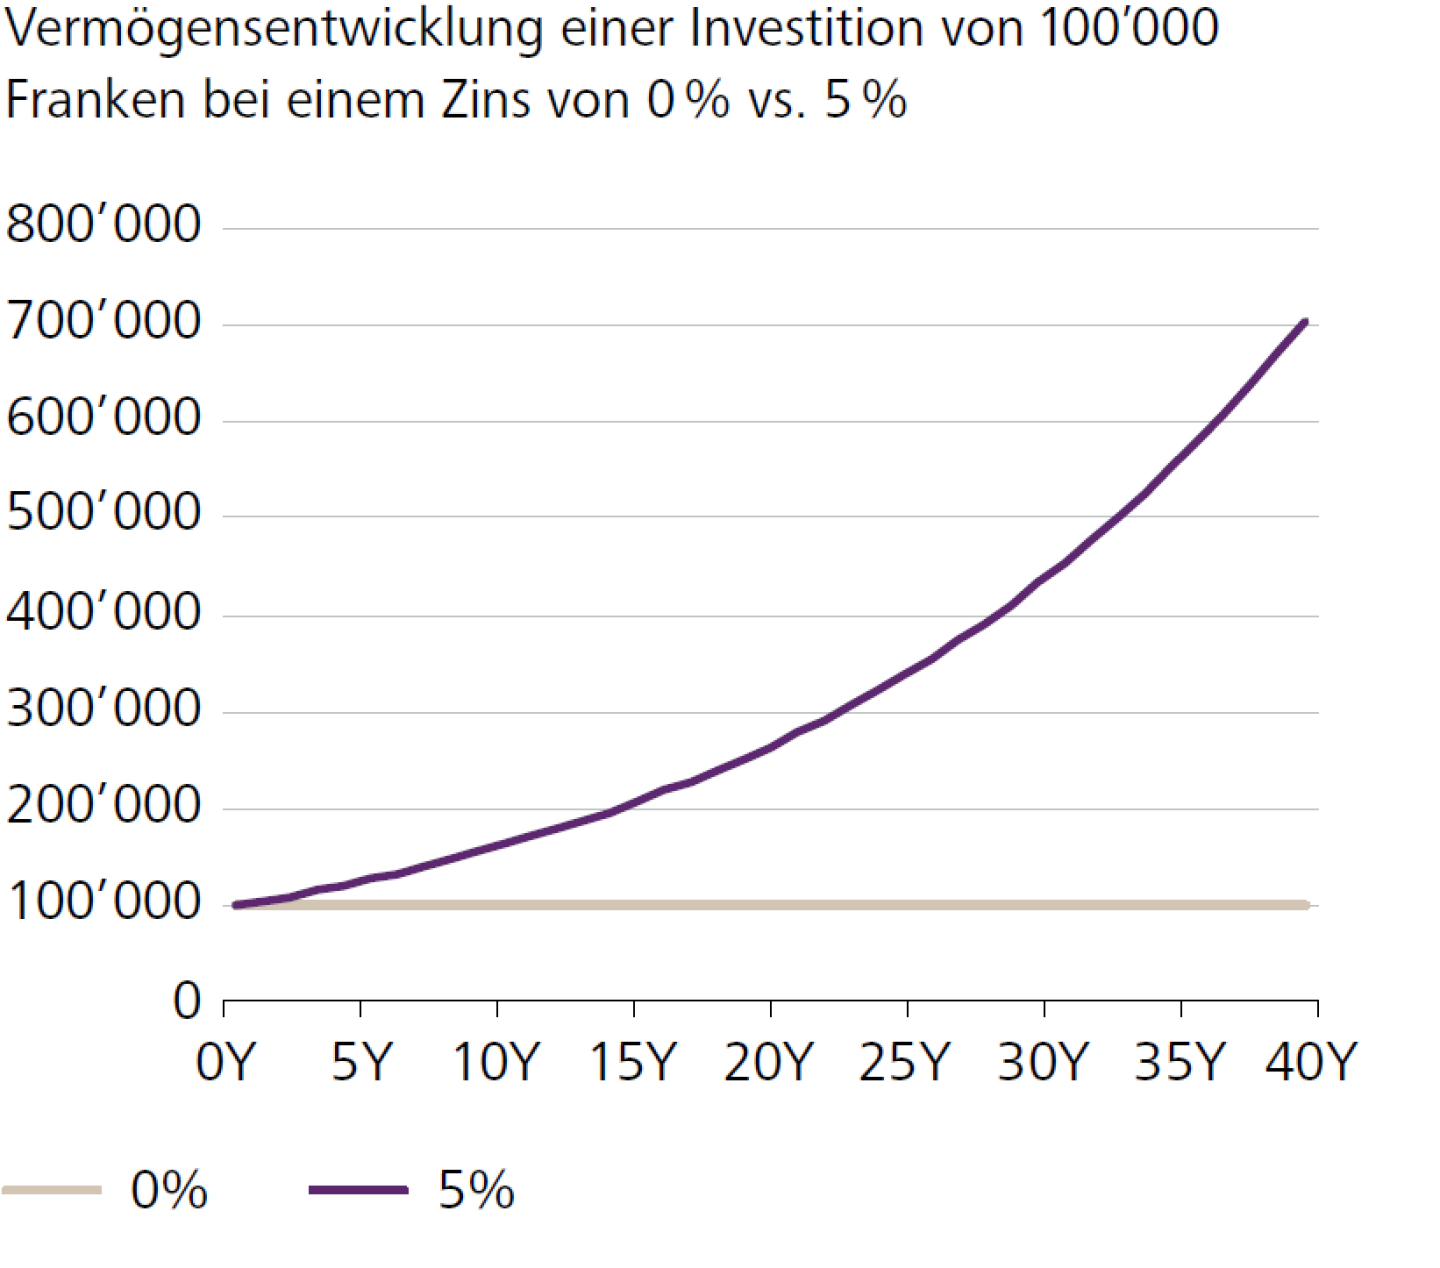 Vermögensentwicklung einer Investition von 100'000 Franken bei einem Zins von 0 % vs. 5 %